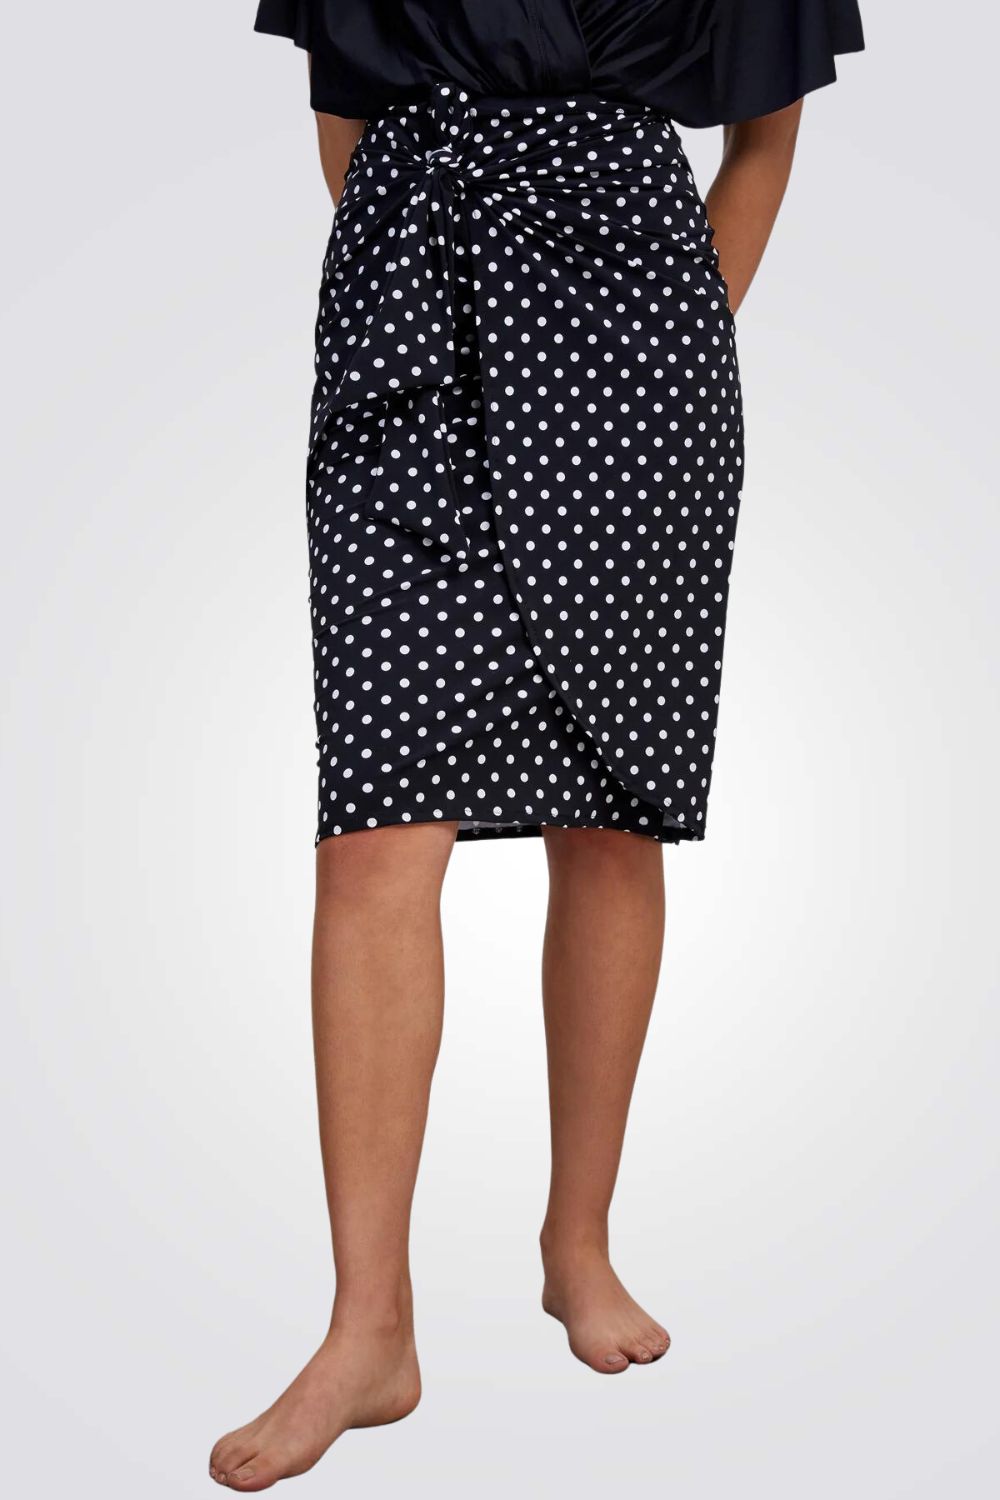 חצאית בגד ים מעטפת קשירה לנשים בצבע שחור עם נקודות